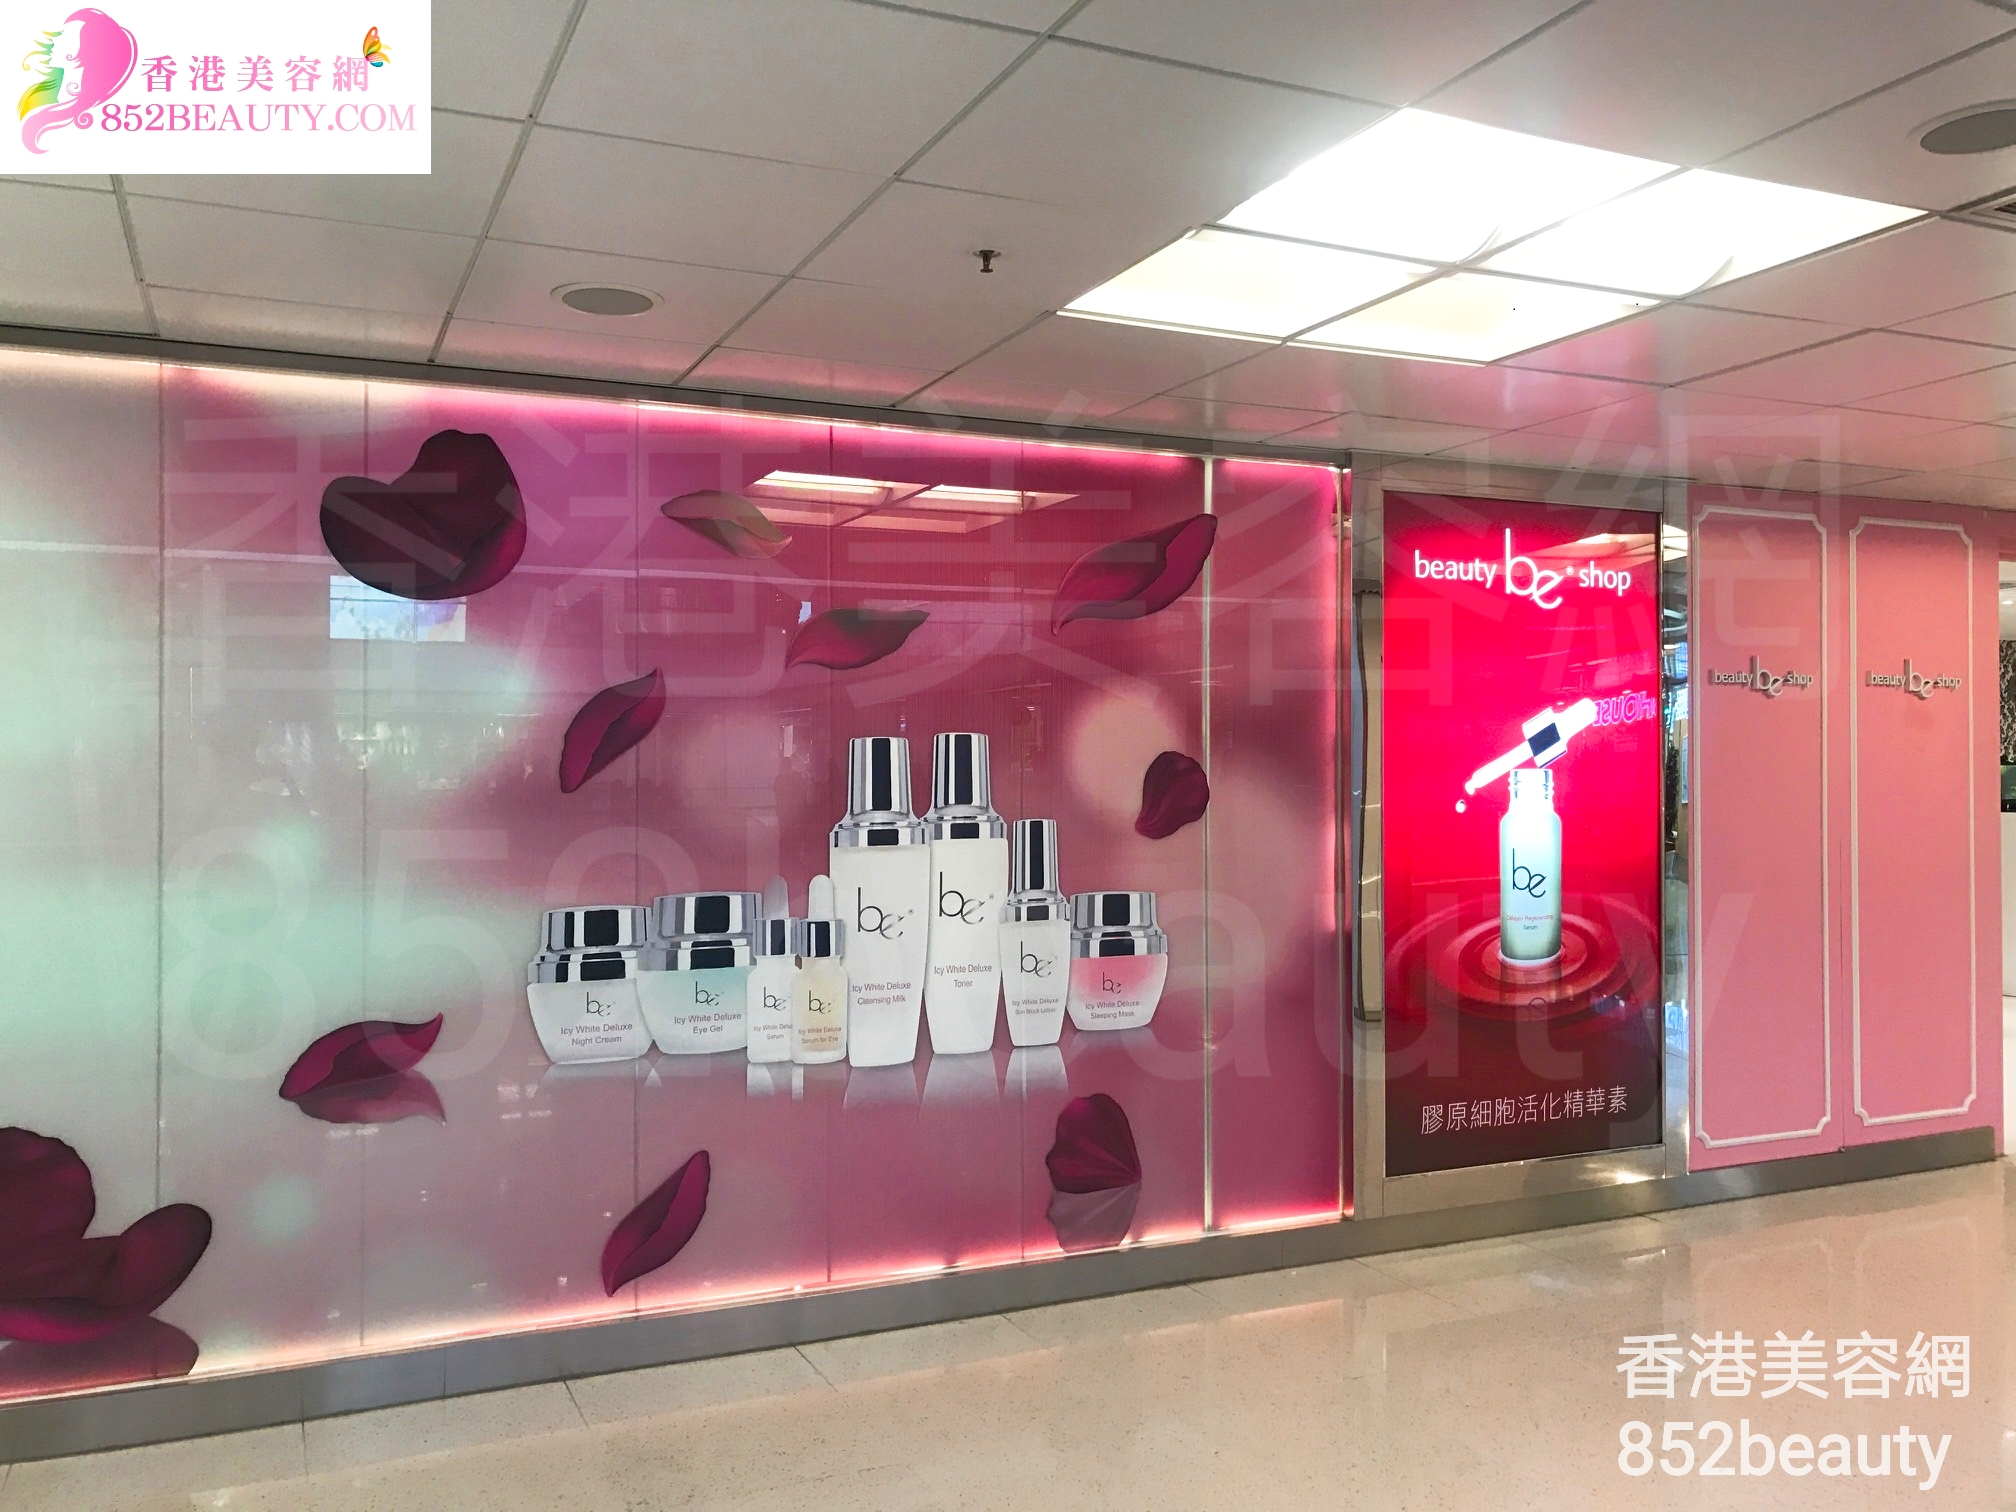 香港美容網 Hong Kong Beauty Salon 美容院 / 美容師: be beauty shop (葵涌廣場)